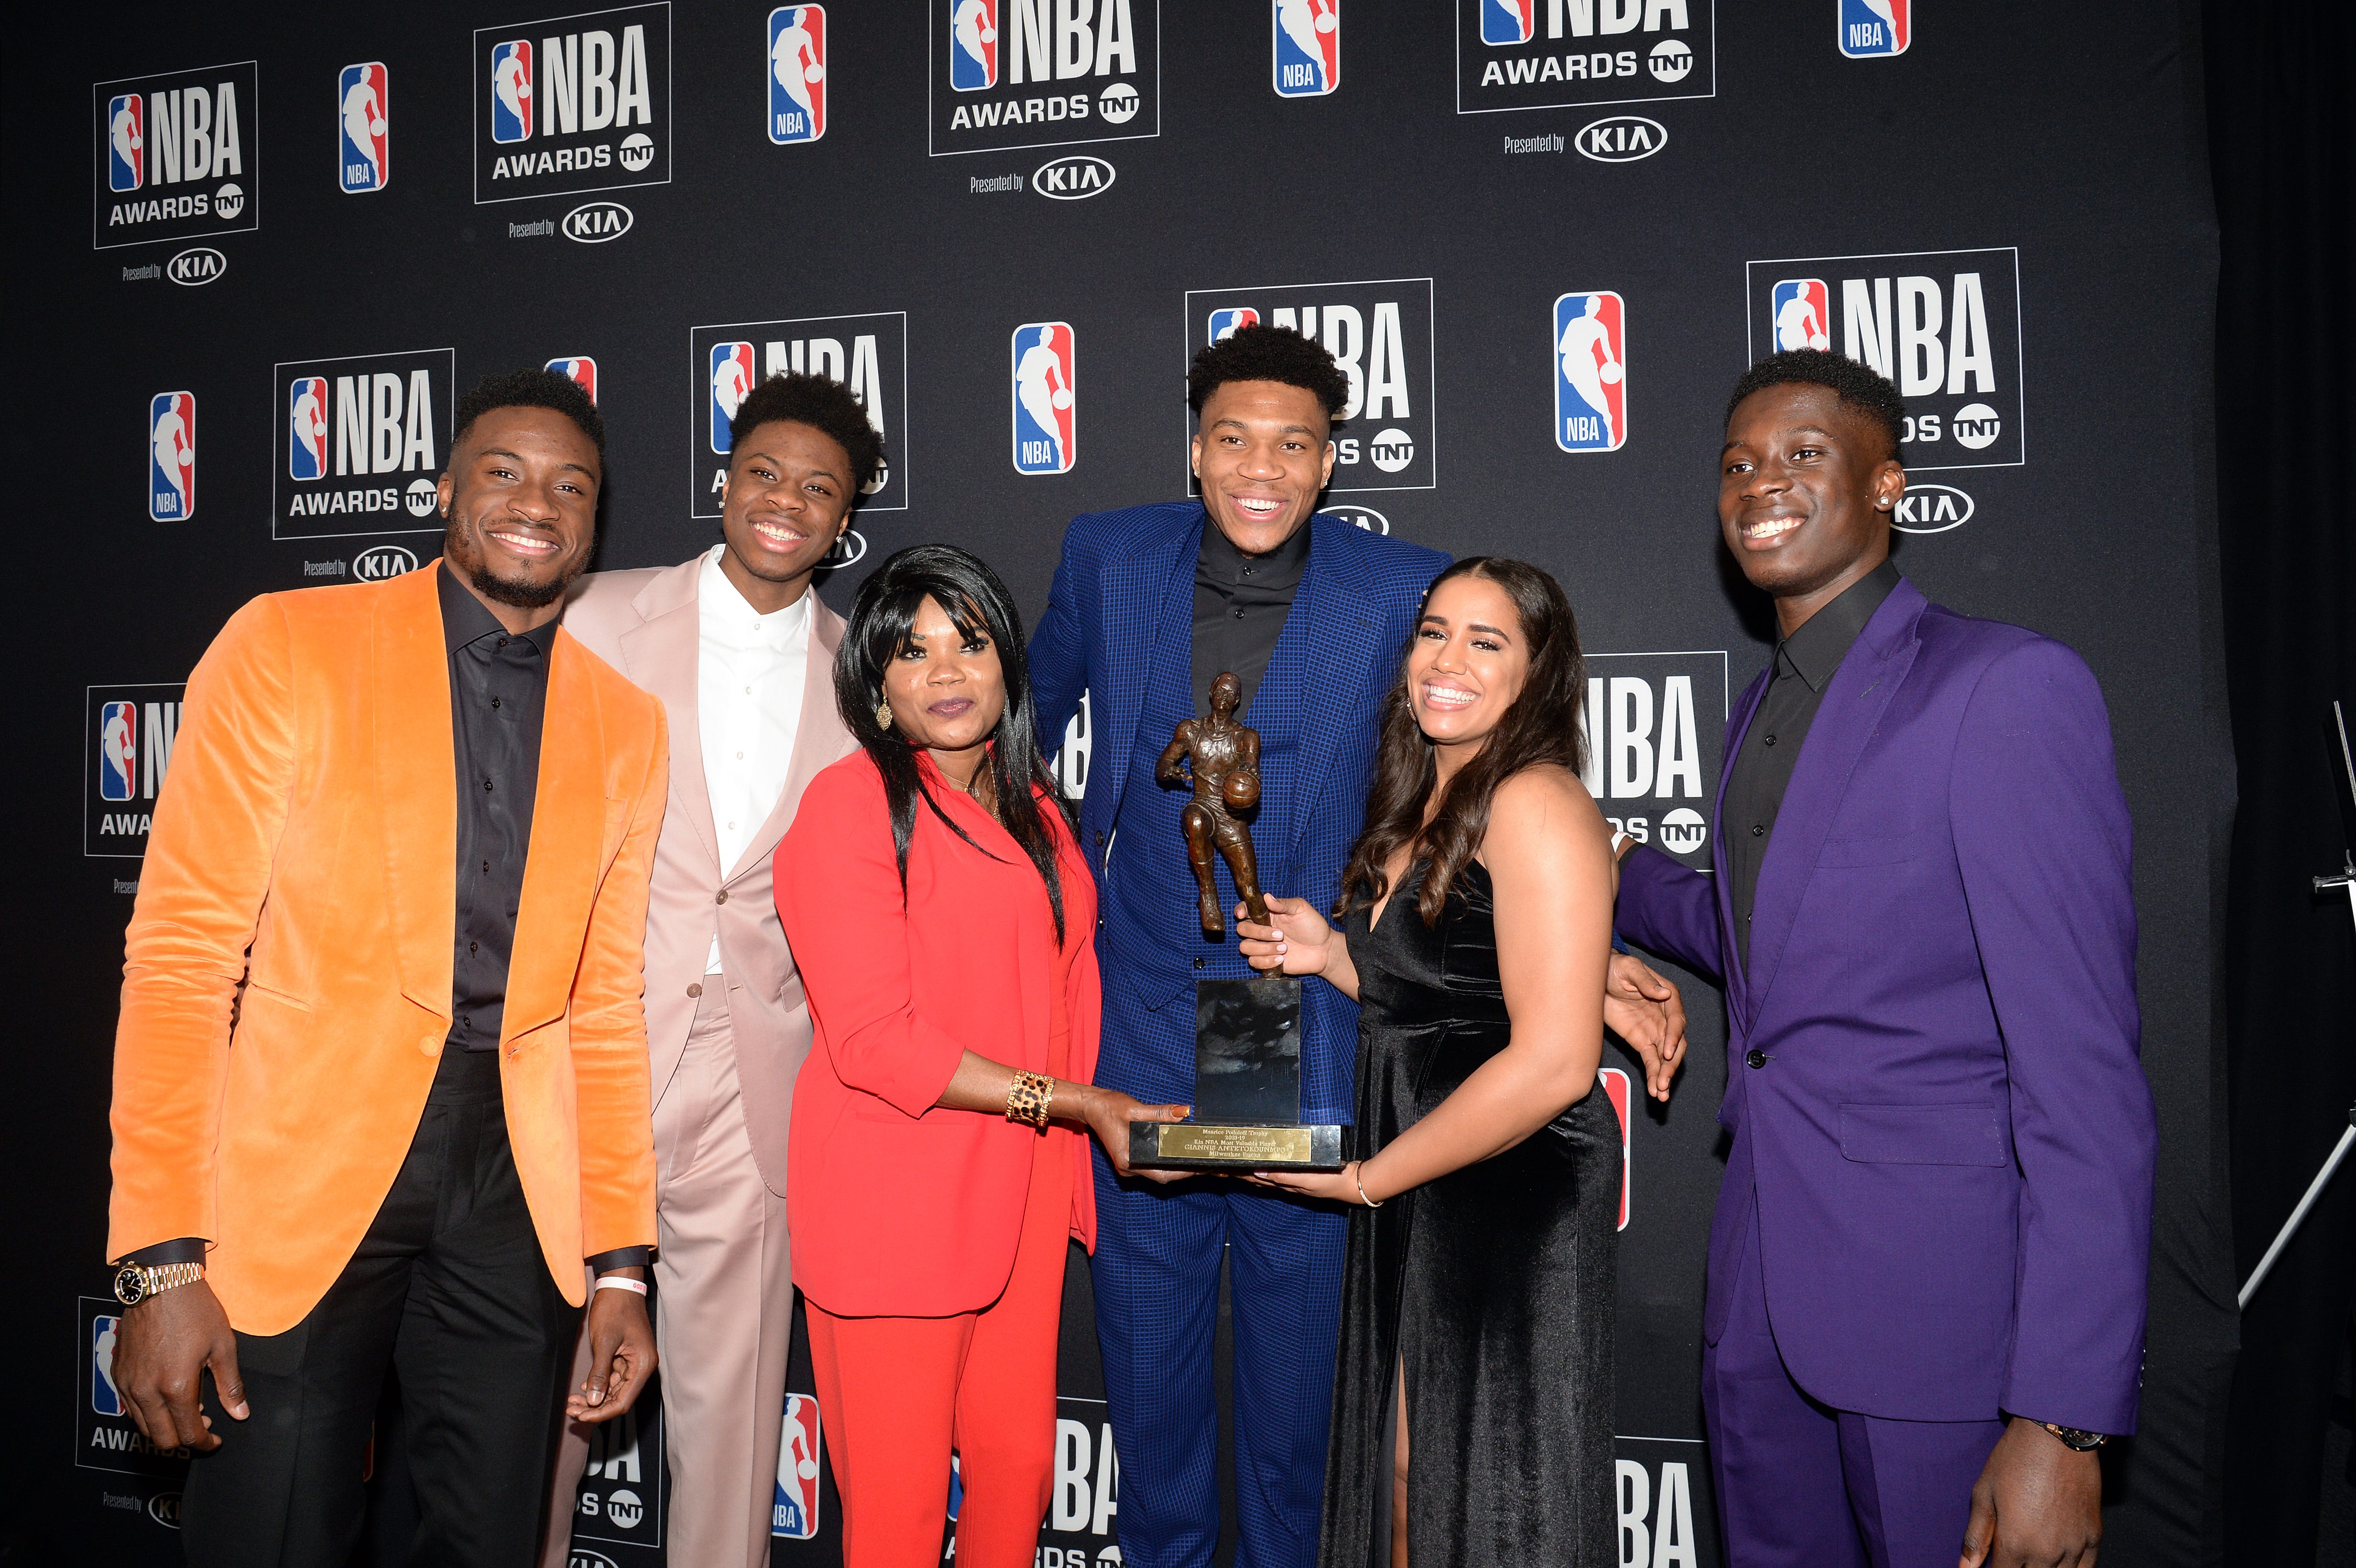 2019 NBA Awards ceremony